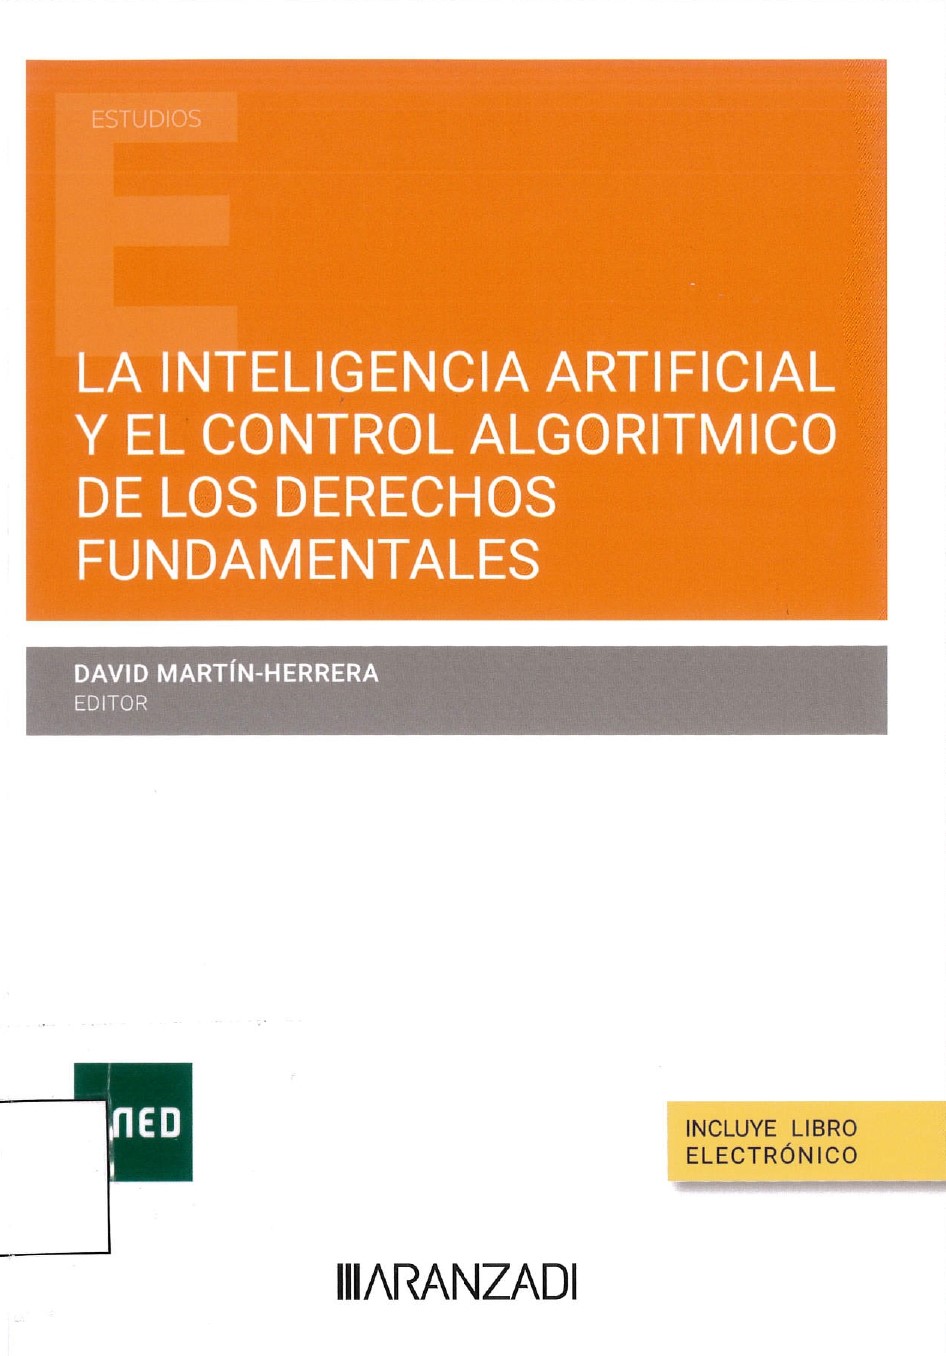 Imagen de portada del libro La inteligencia artificial y el control algorítmico de los derechos fundamentales